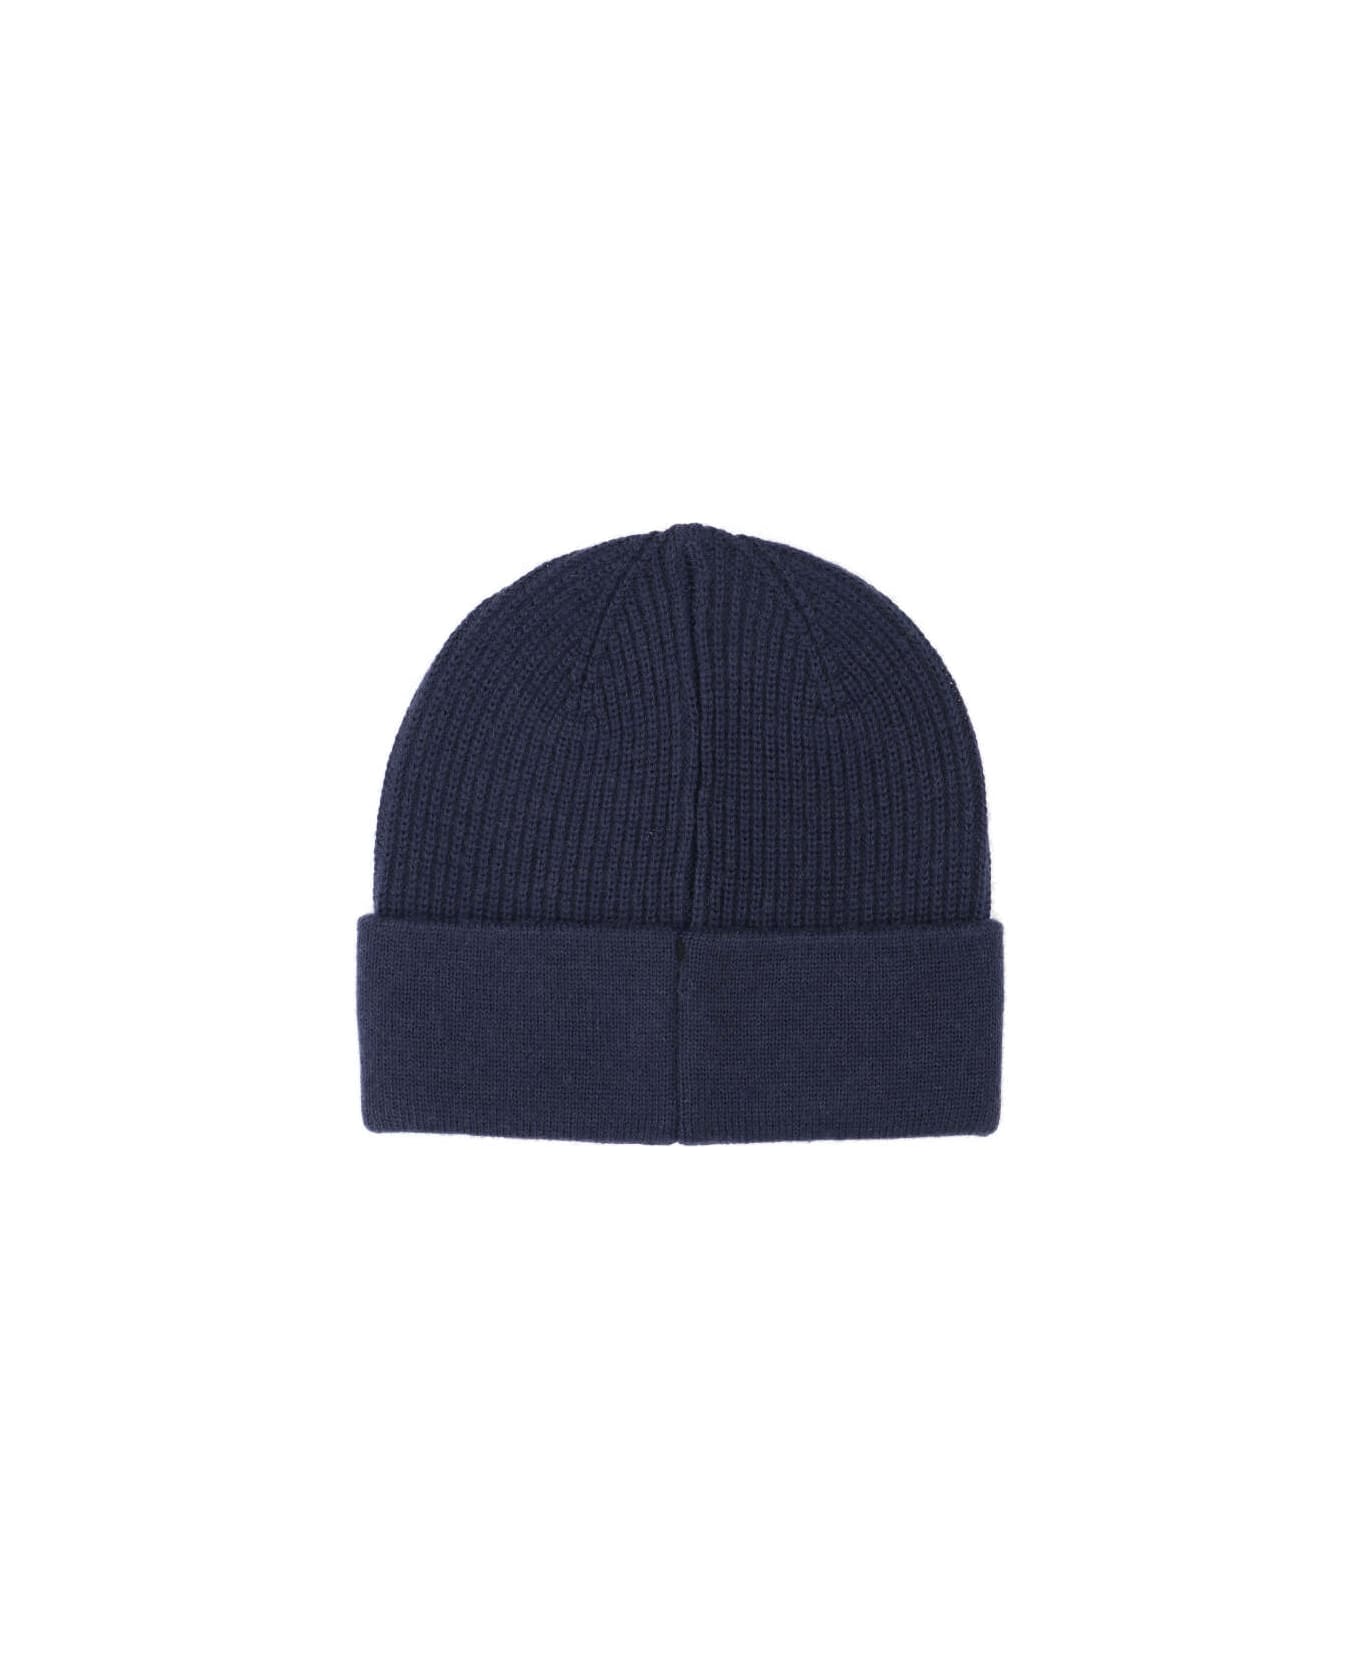 Autry Beanie Wool Cap - Blue 帽子